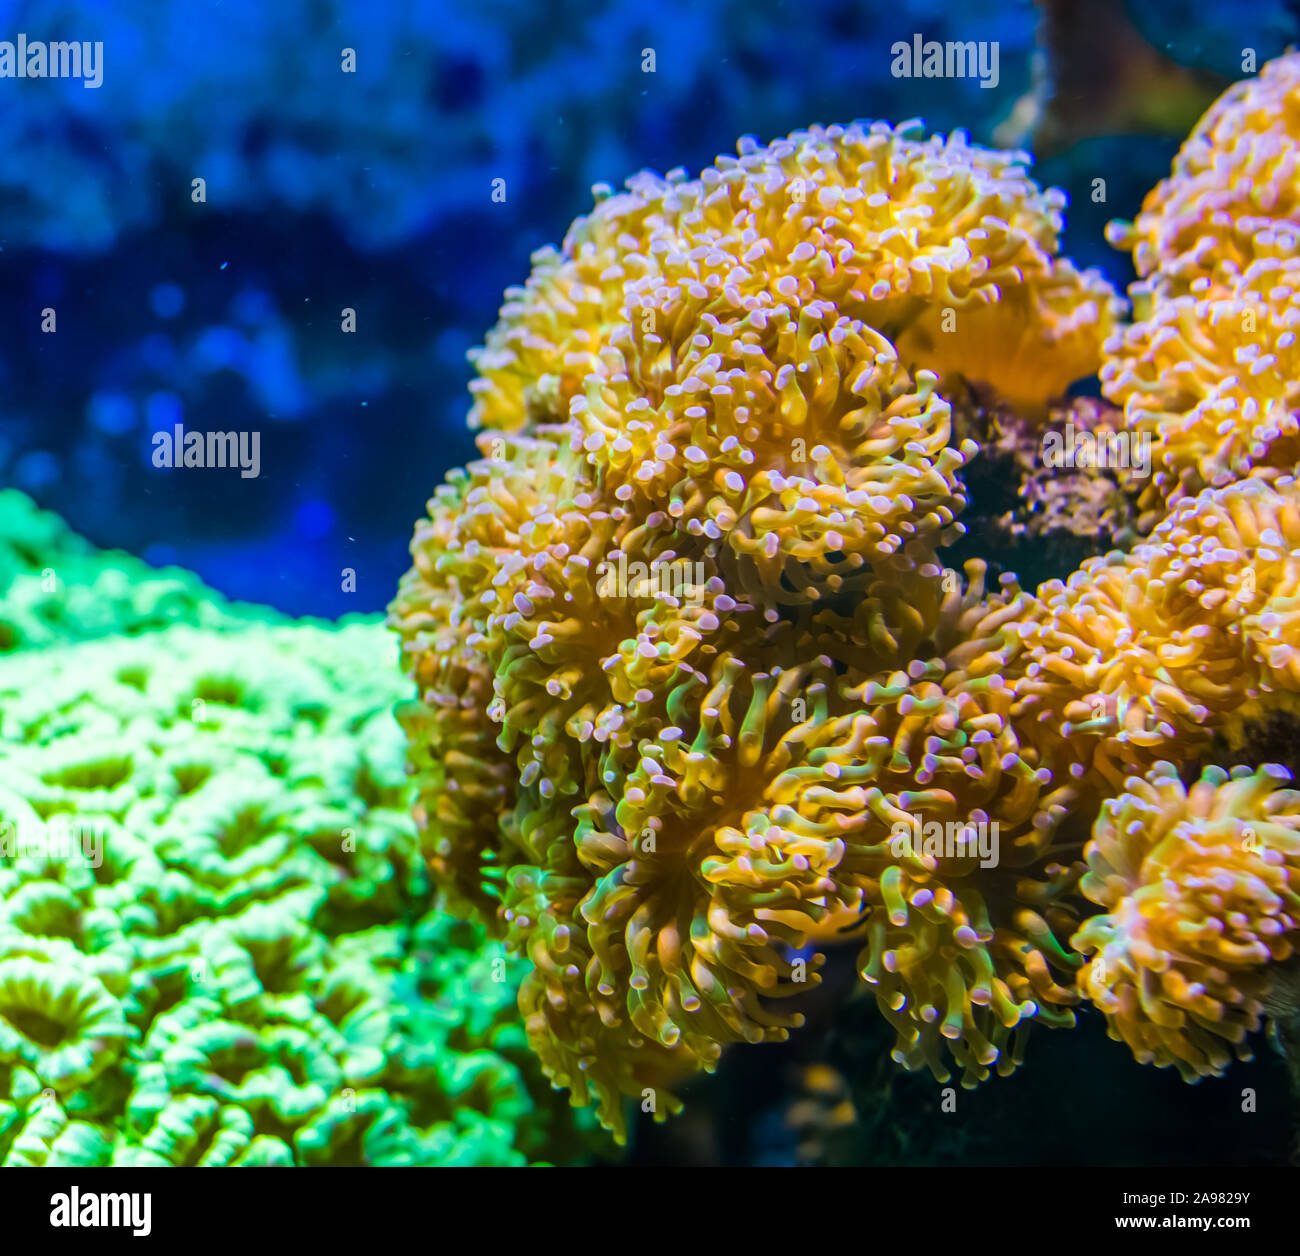 Großer Teppich von euphyllia Seeanemonen, Stony coral Specie, populäre Aquarium pet in der Aquakultur, marine Leben Hintergrund Stockfoto